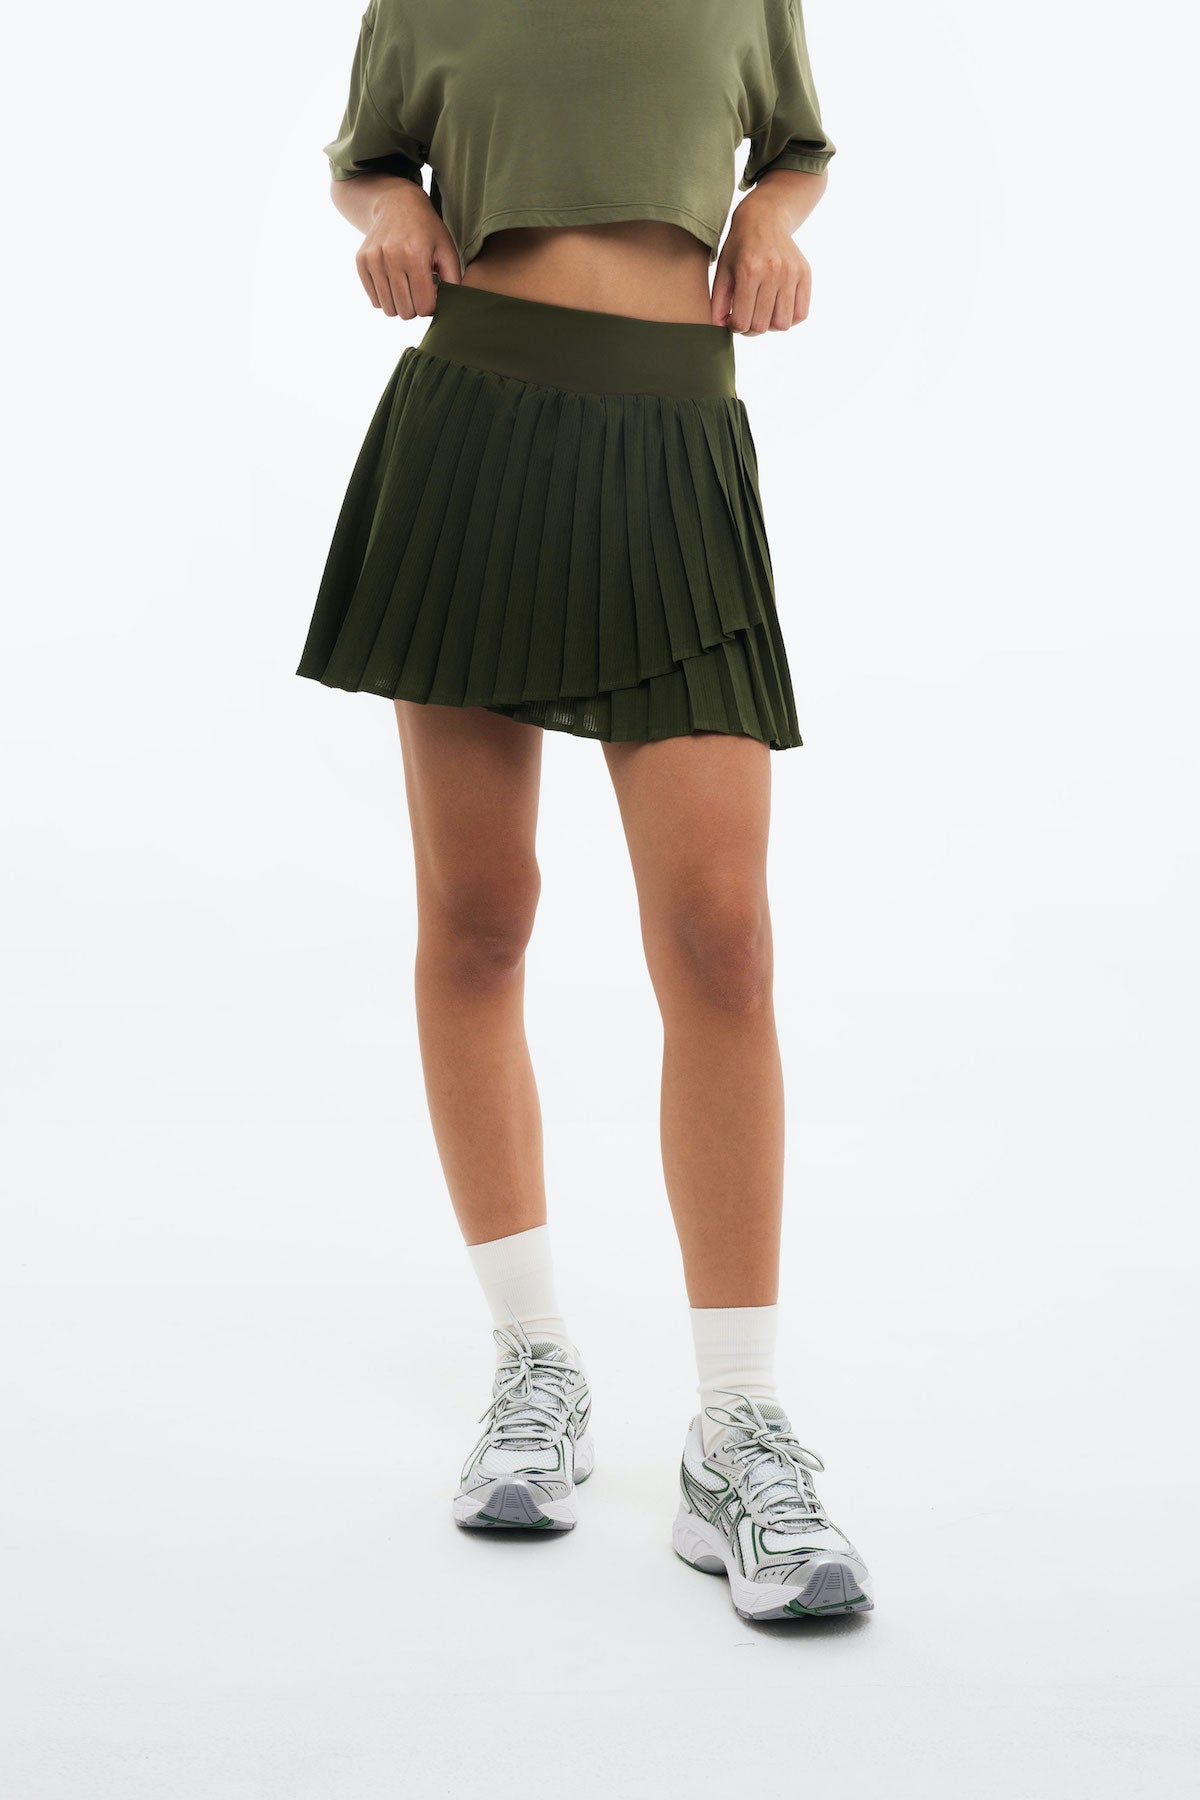 Flow Tennis Skirt in Forest Green (Bestseller)